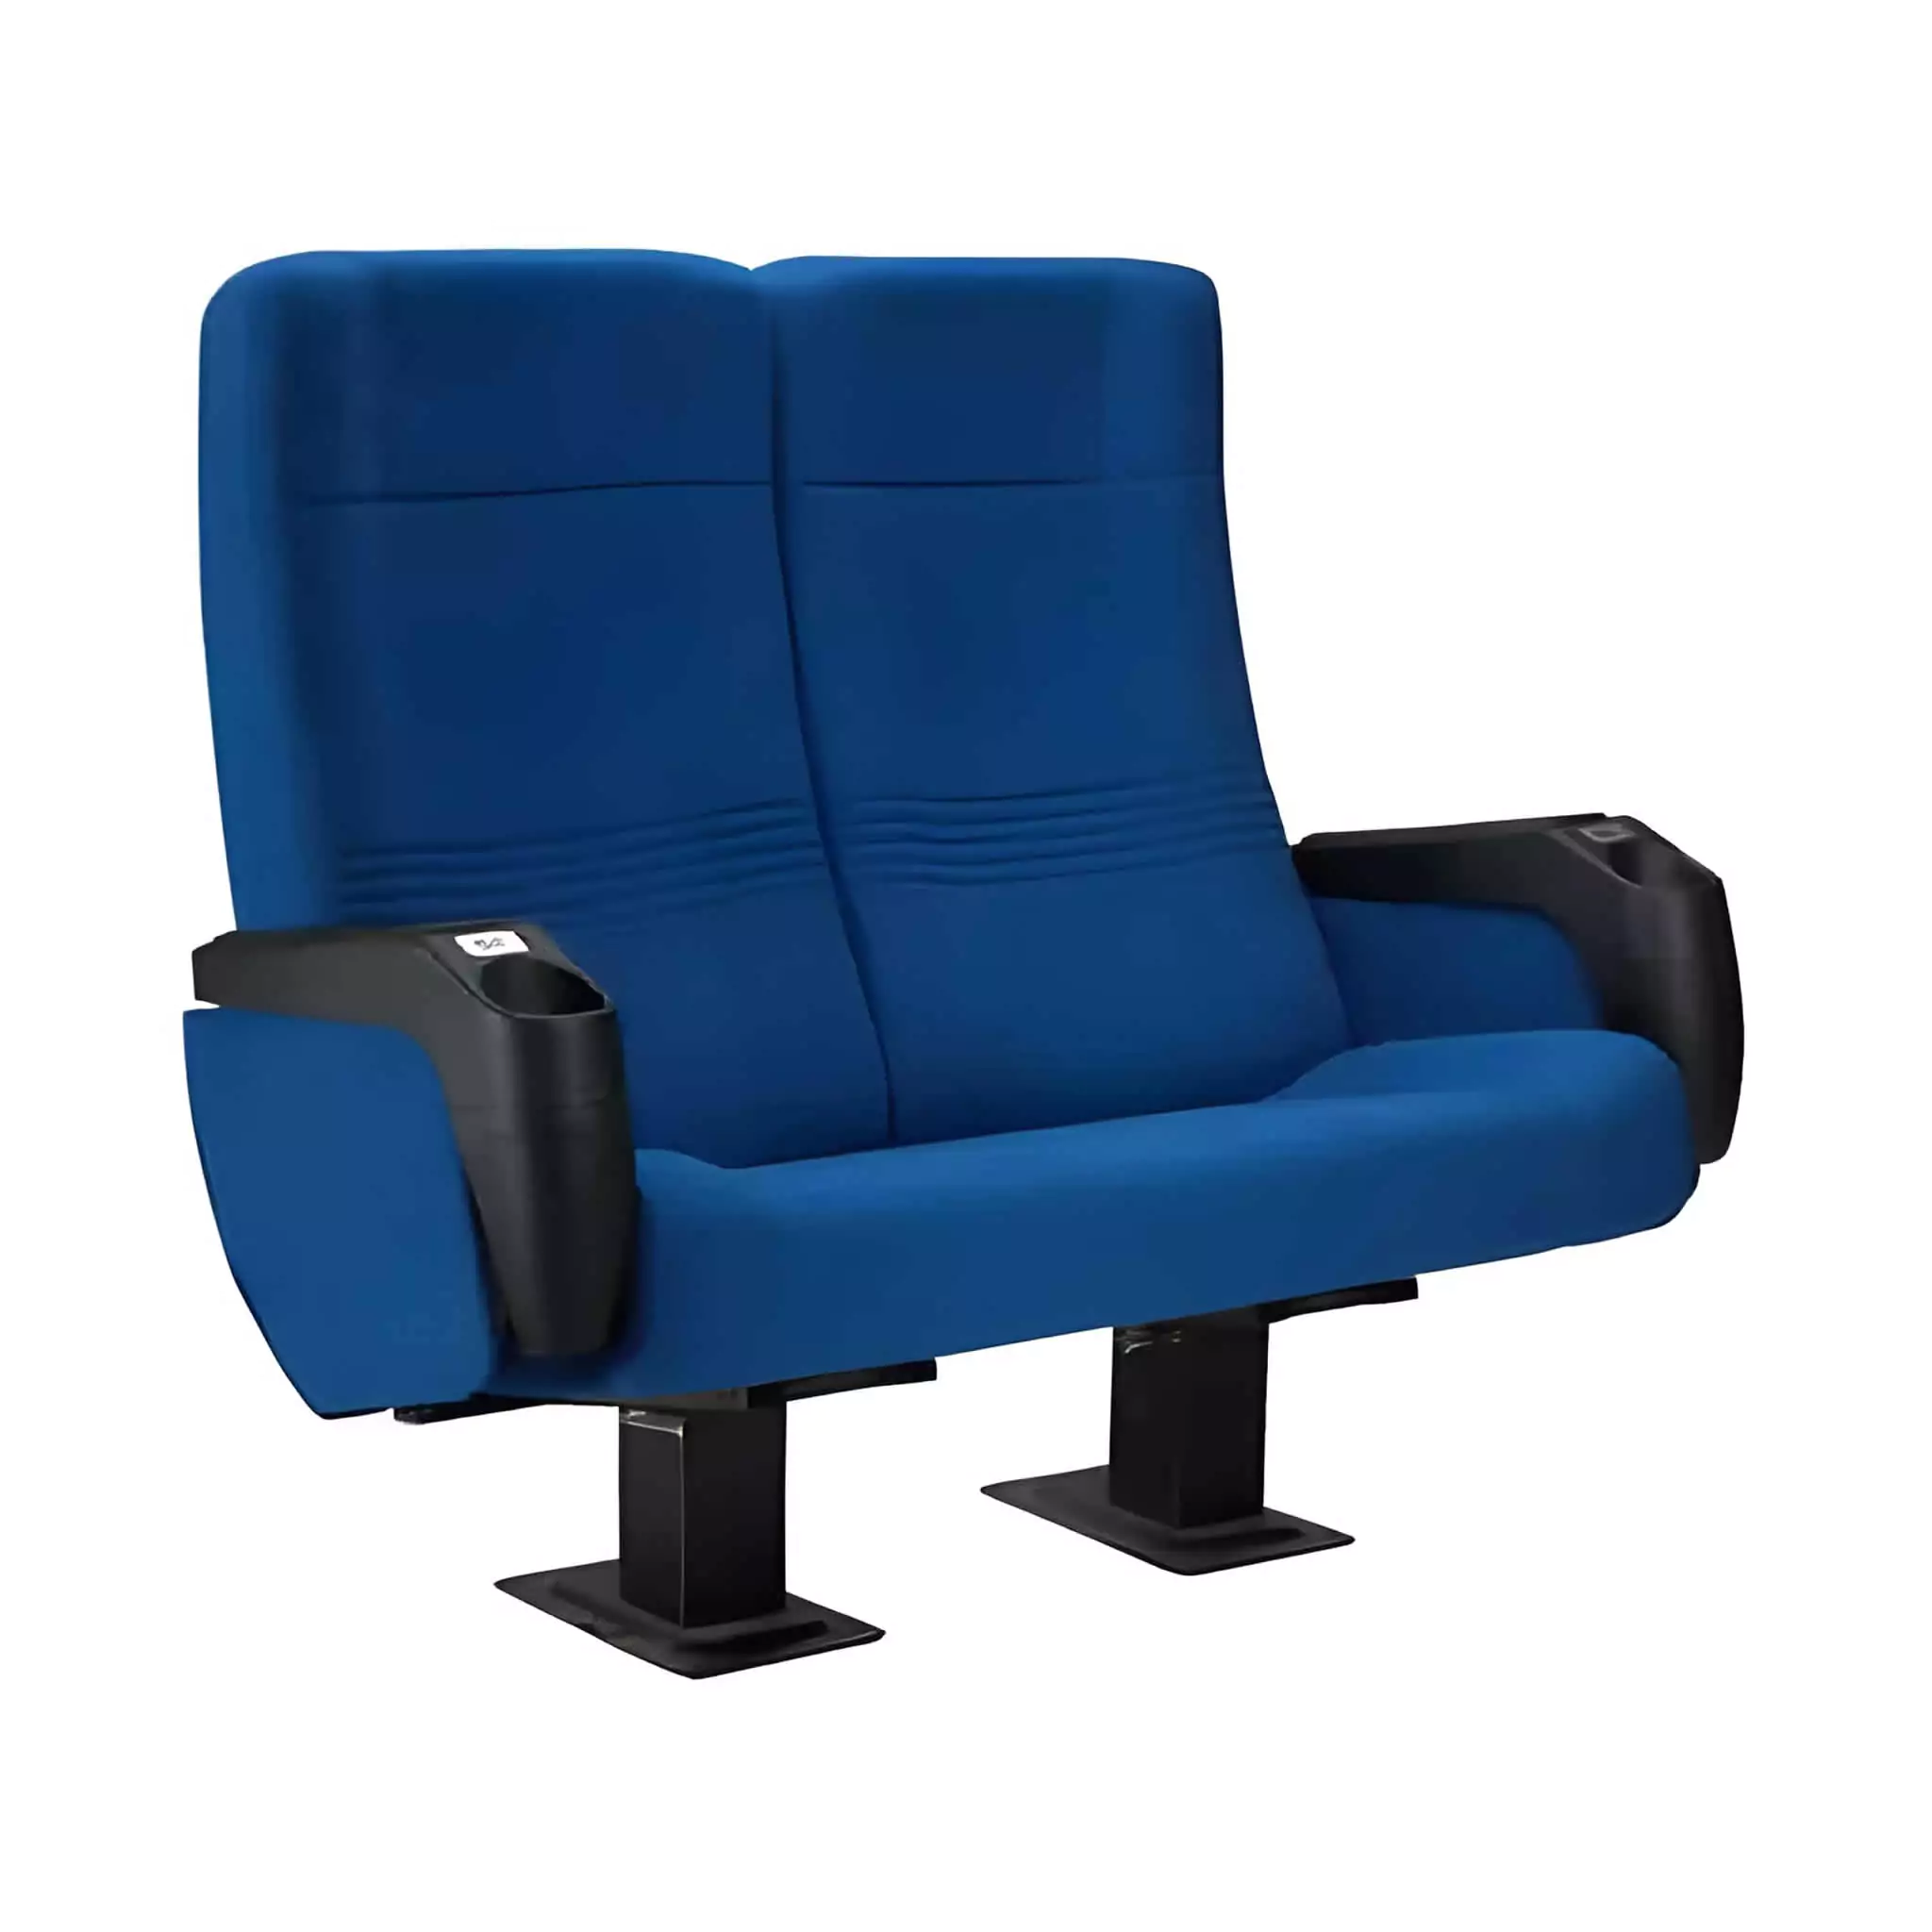 Seat Model: LAPIS L / TWIN